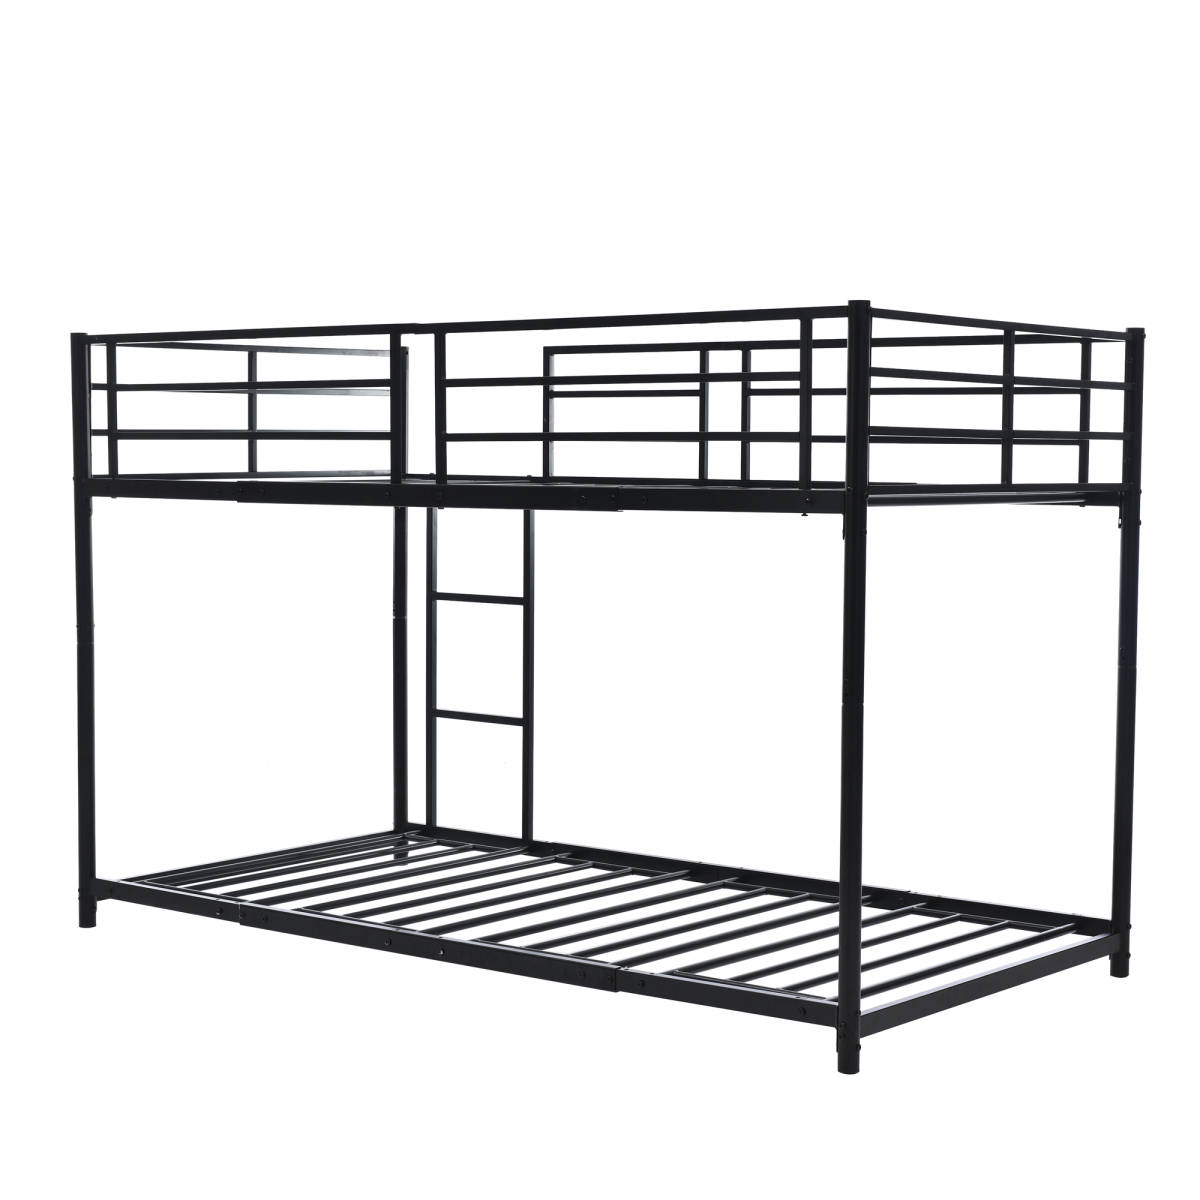 [ новый продукт ][ черный ] двухъярусная кровать 2 уровень bed steel выдерживающий . bed одиночный труба bed металлический крепкий вертикальный лестница low модель фирма участник . студент .